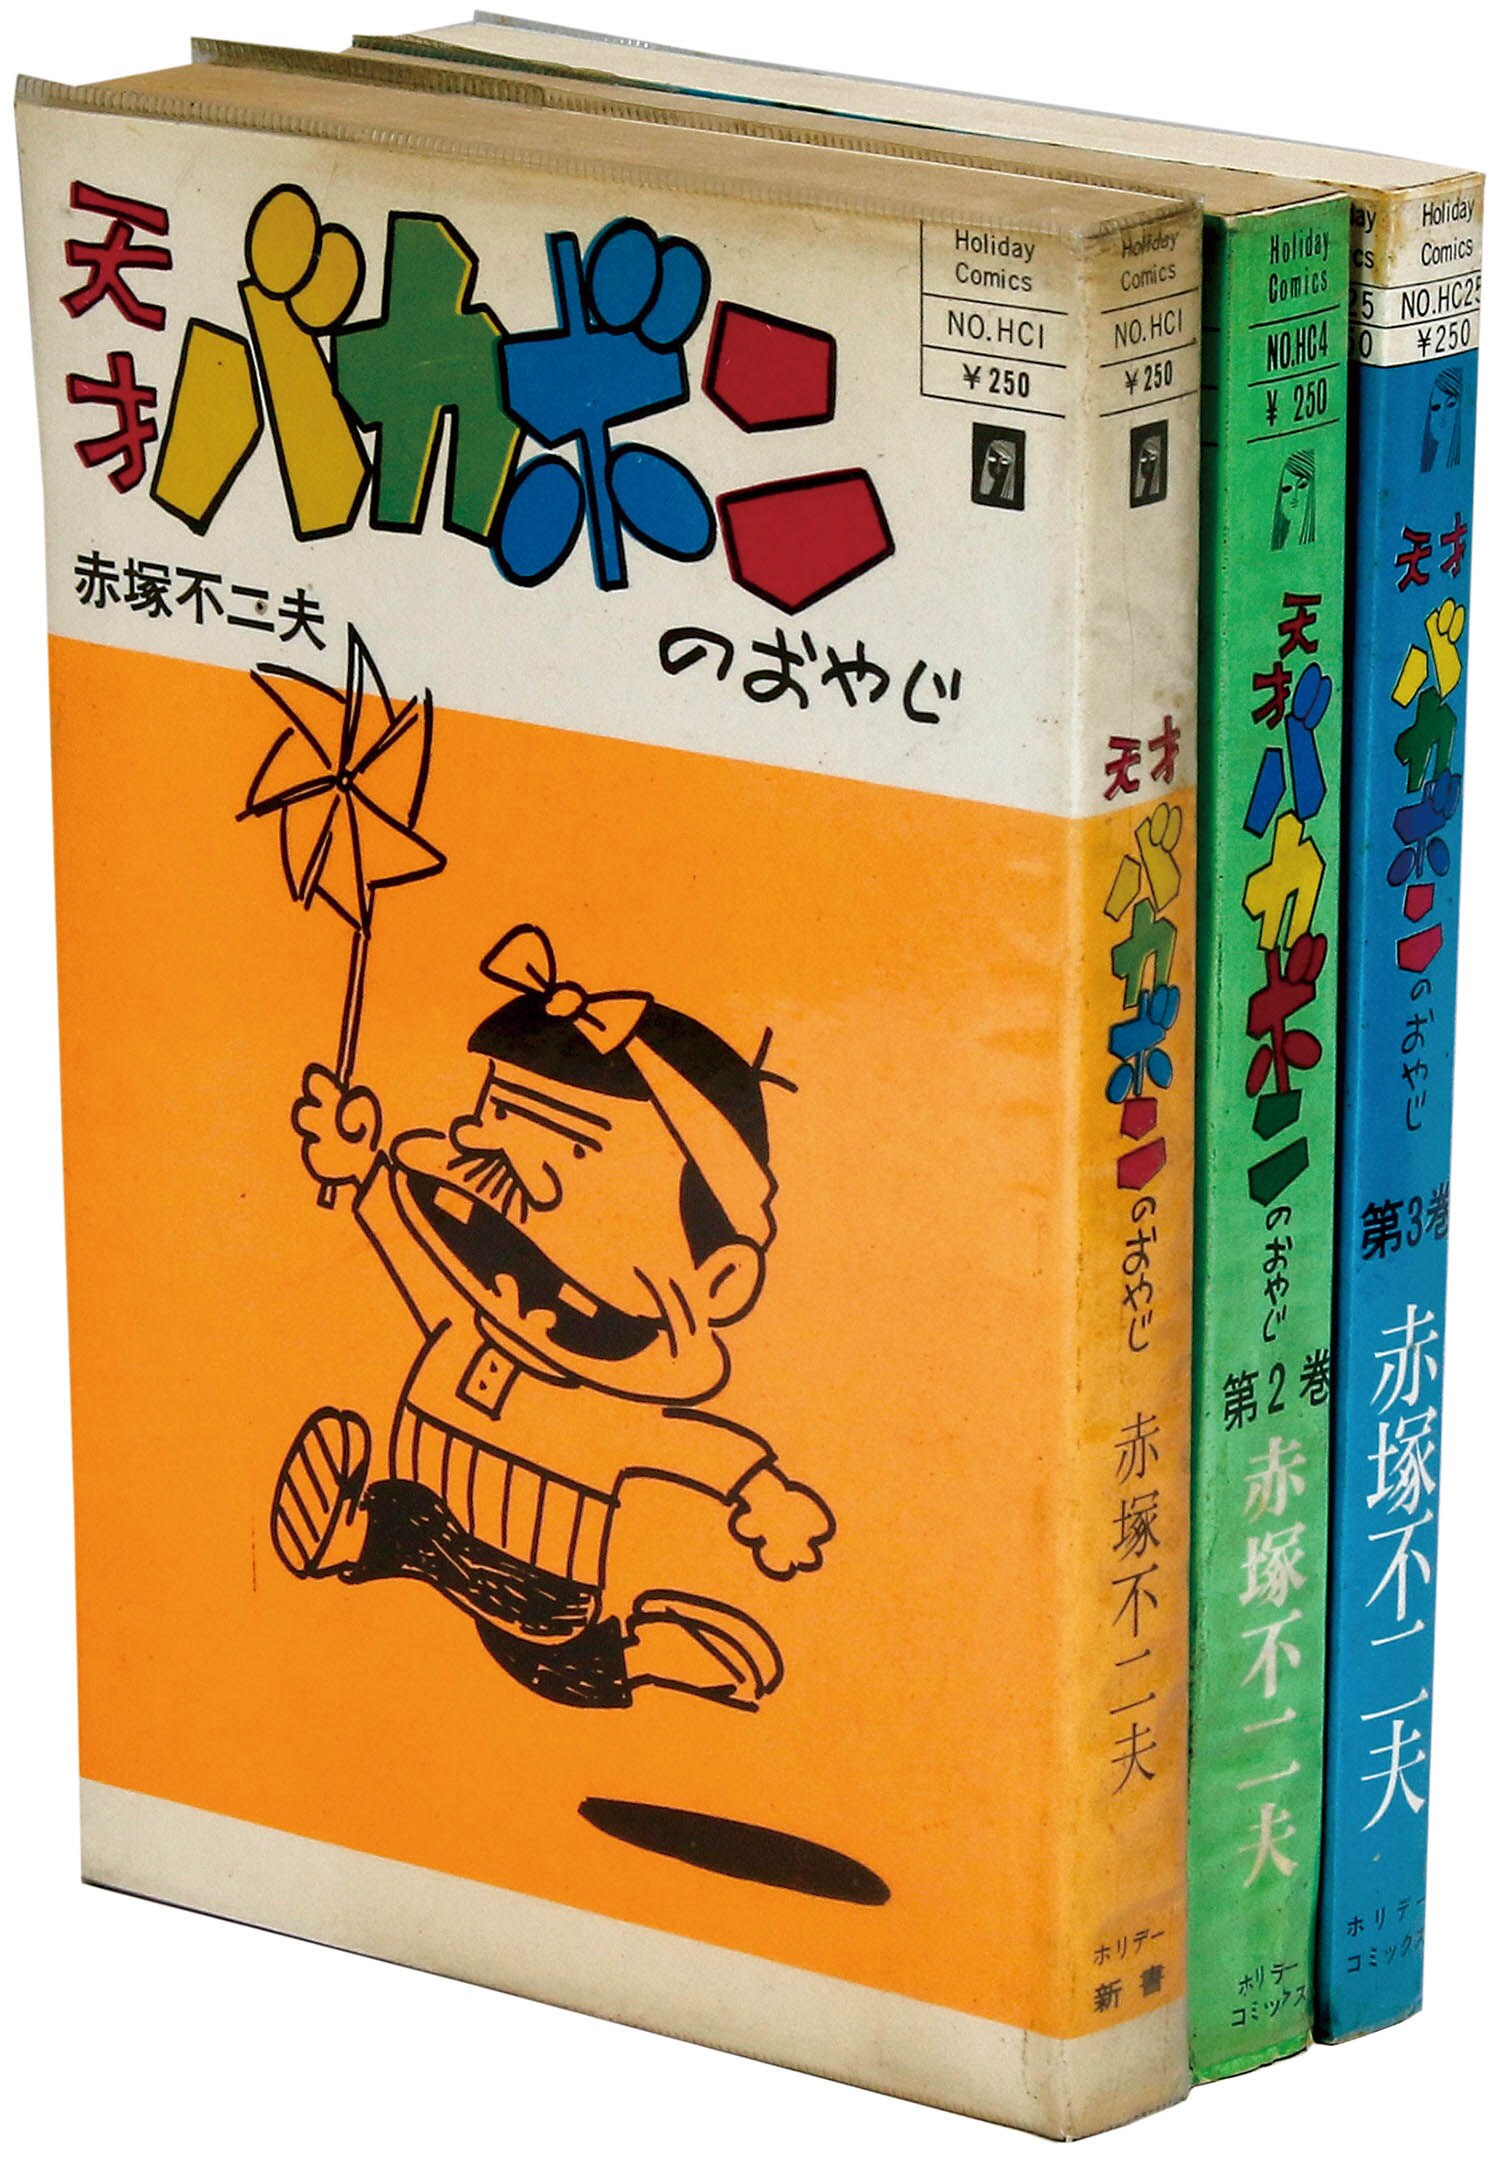 ホリデーコミックス 赤塚不二夫 天才バカボンのおやじ全3巻初版セット